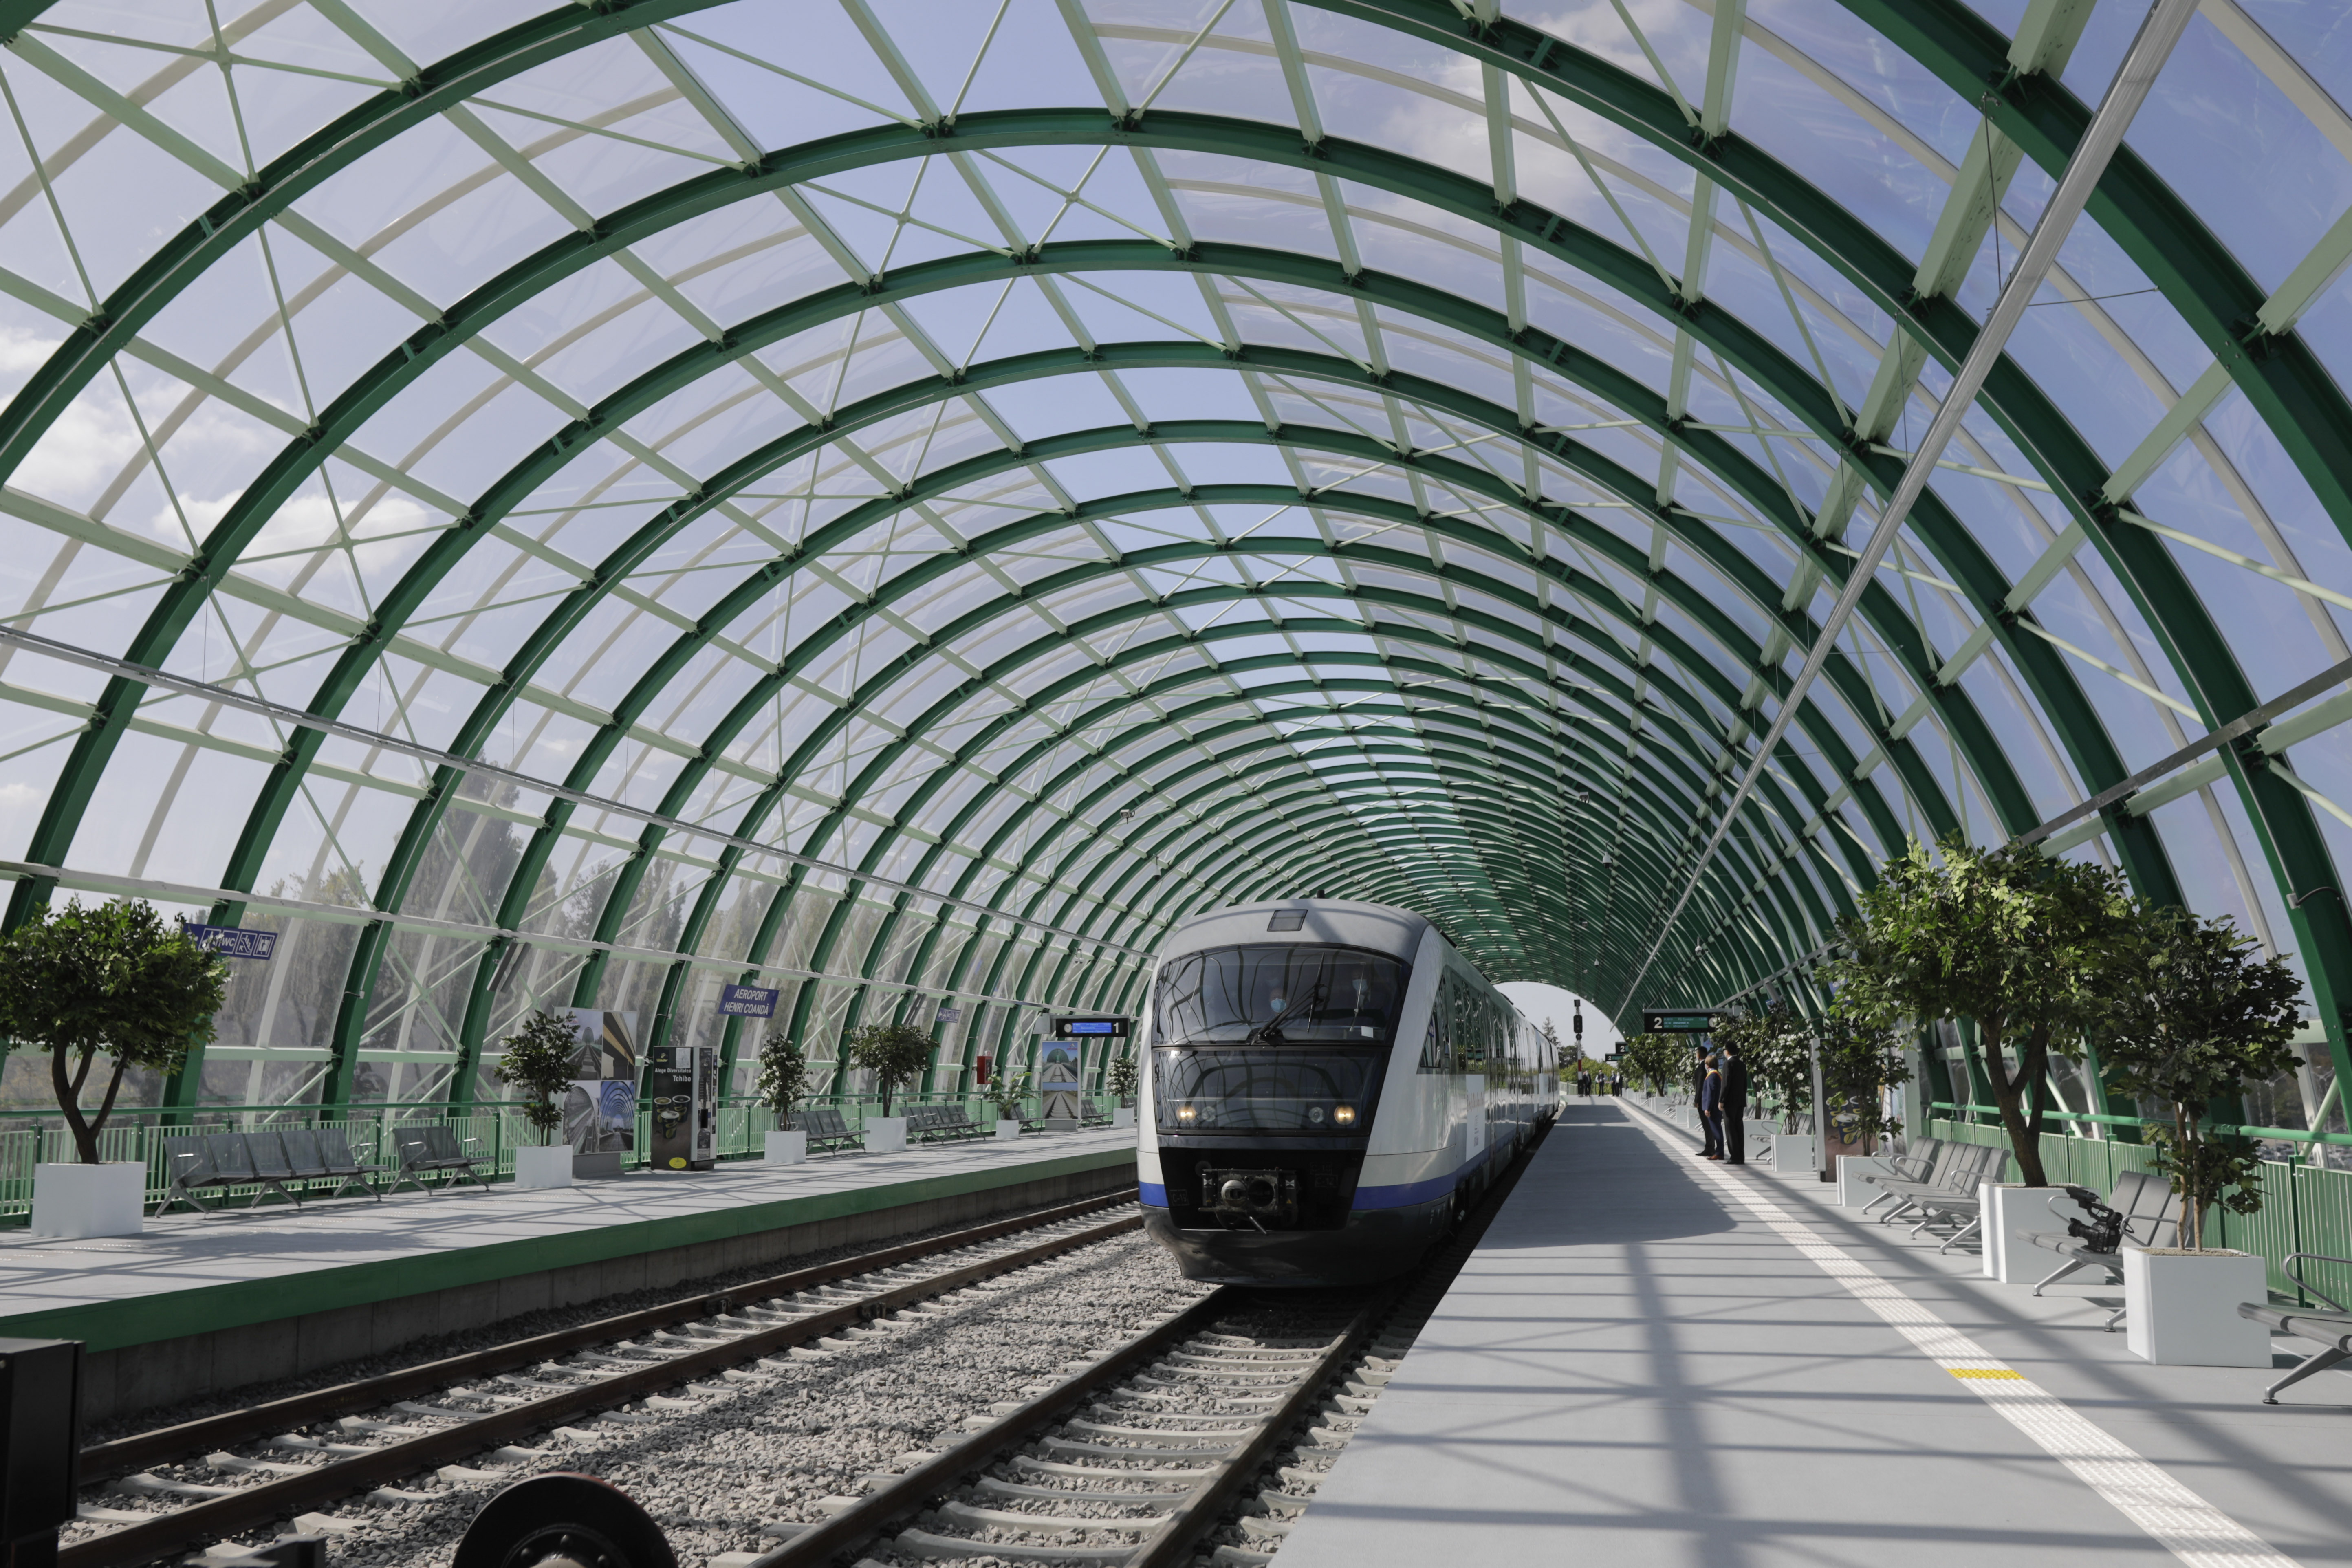 Trenul între Gara de Nord şi Aeroportul Otopeni va circula cu călători din 12 decembrie